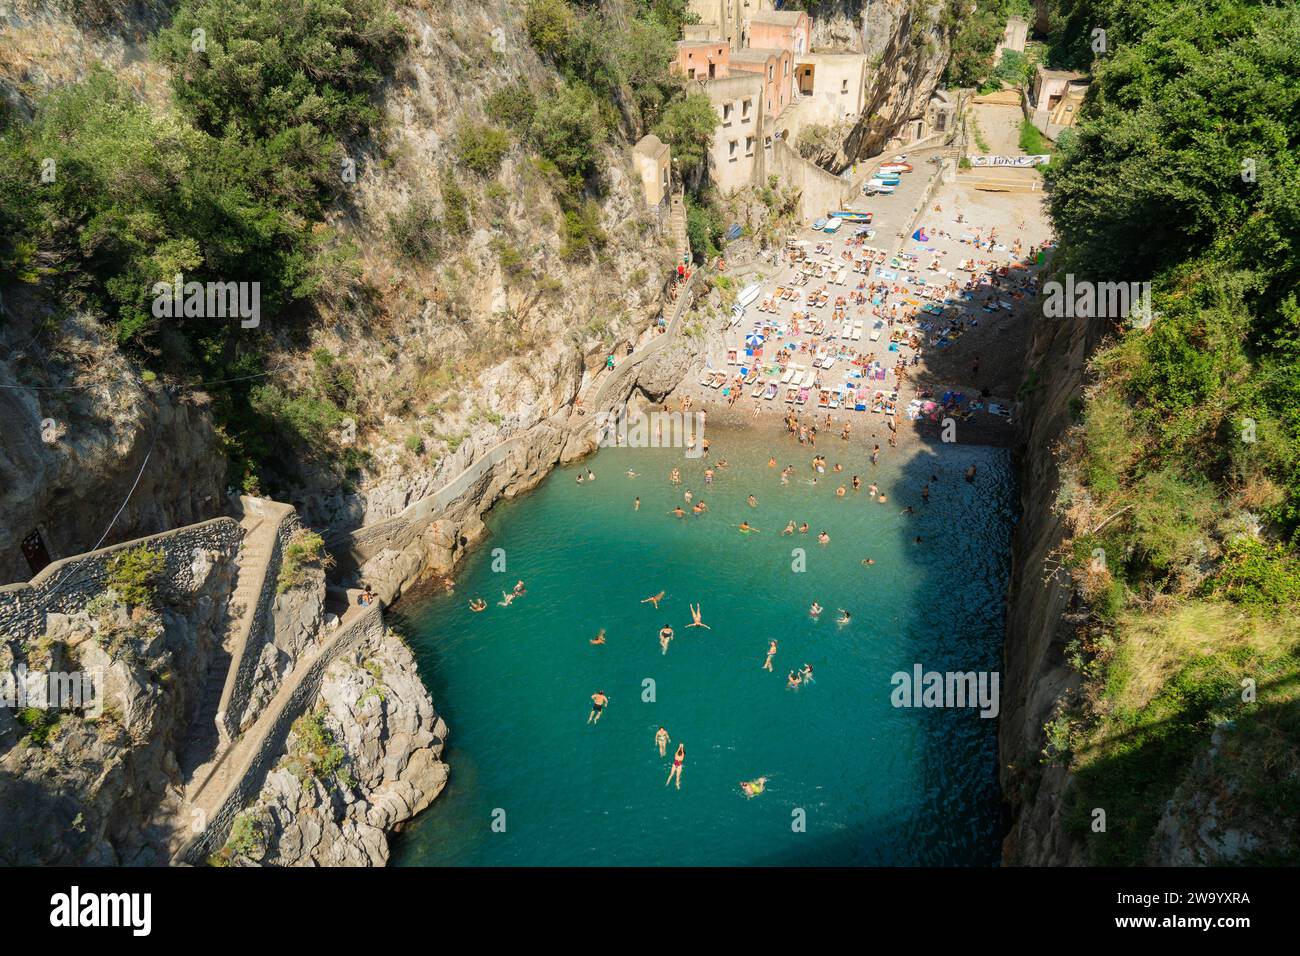 The famous Fiordo di furore cove in Amalfi coast popular tourist destination in summer in south of Italy. Stock Photo